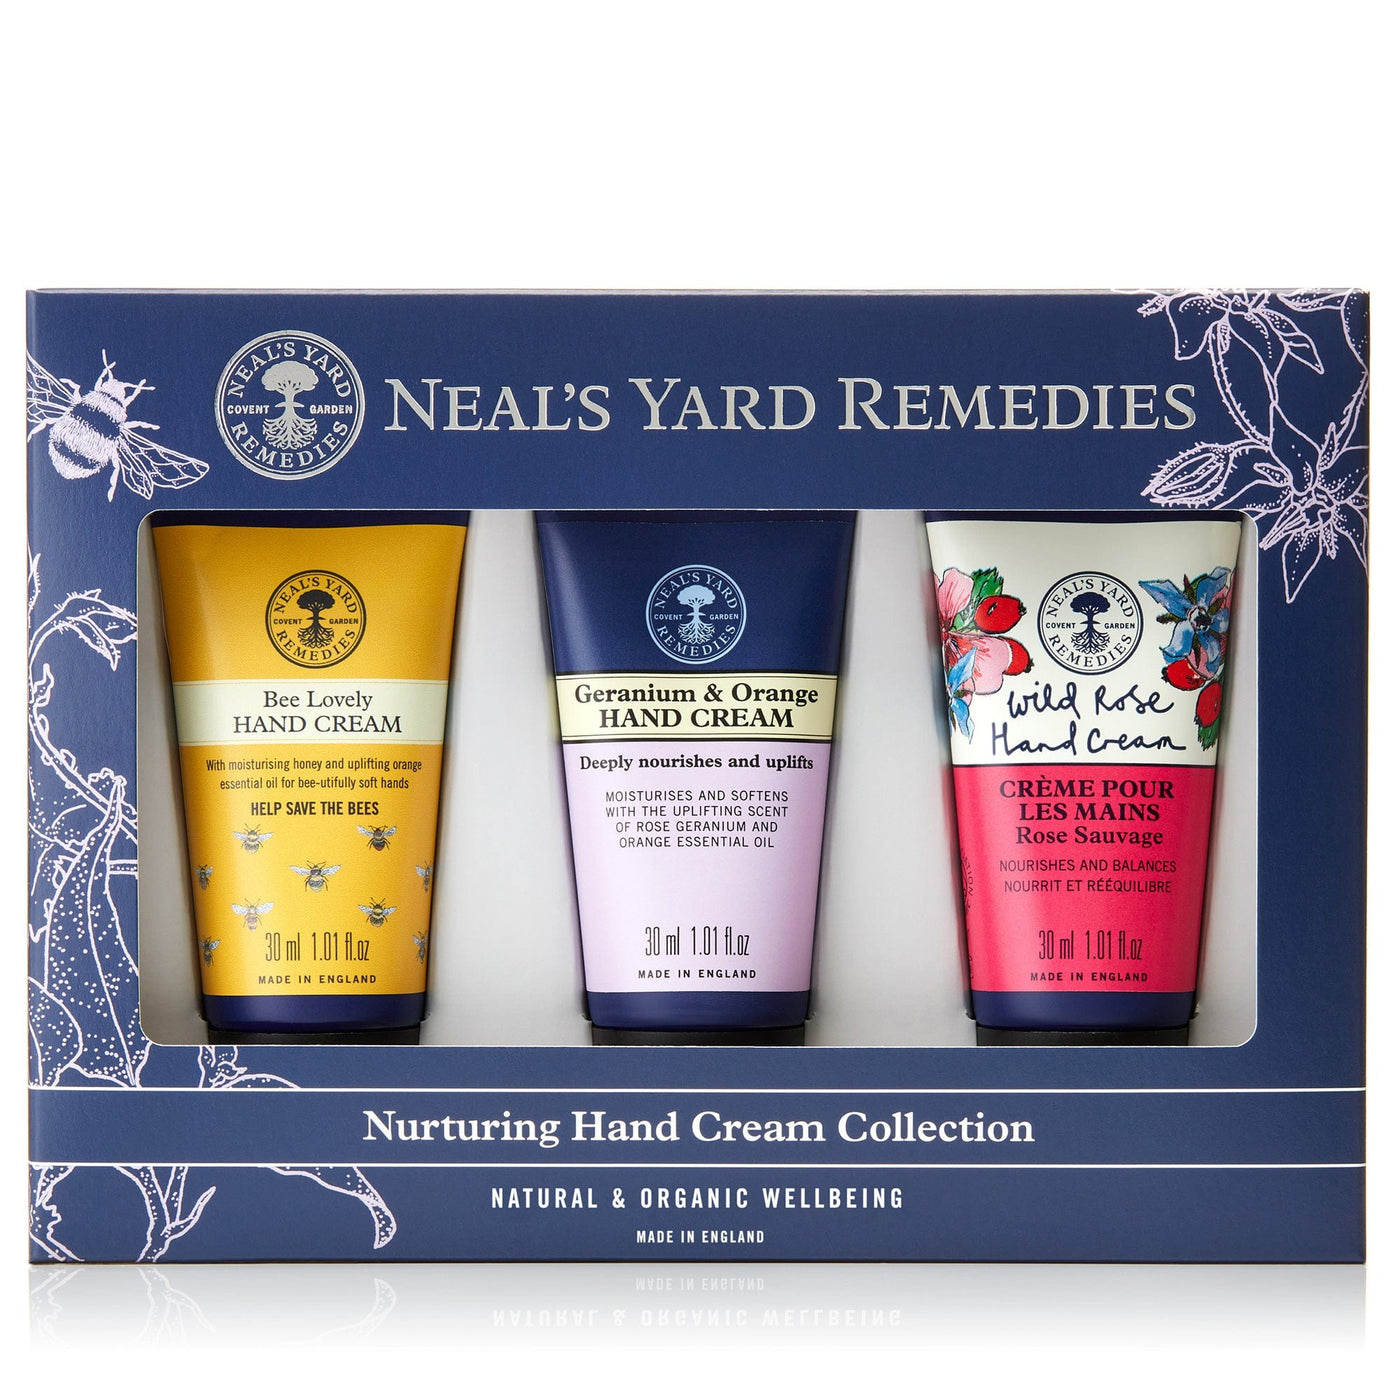 Neal's Yard Remedies Nurturing Hand Cream Collection